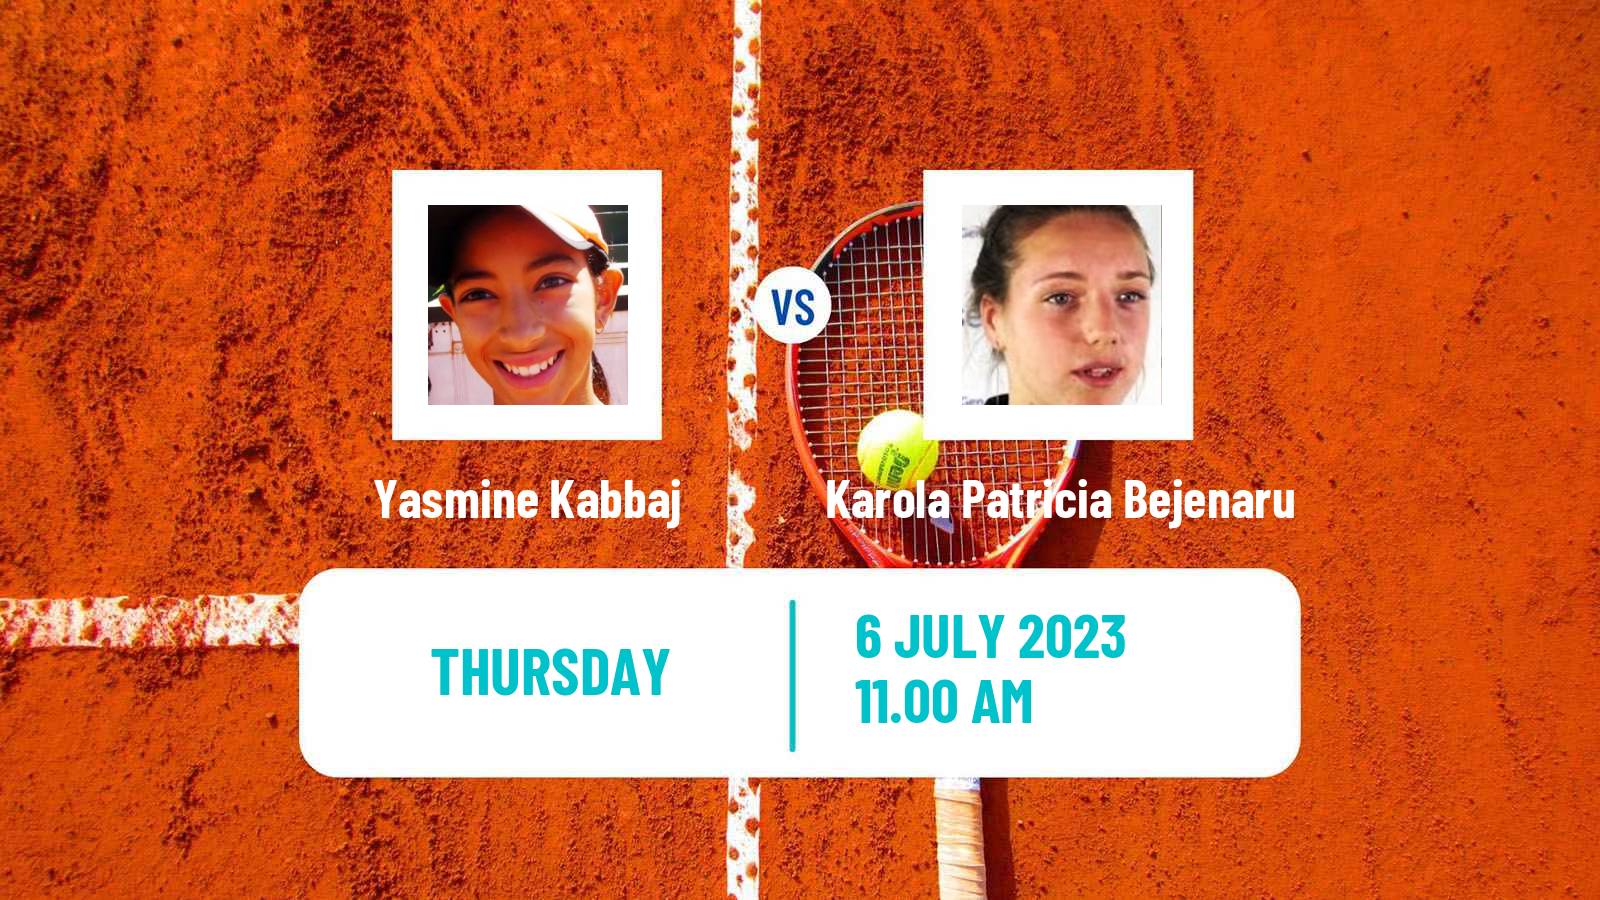 Tennis ITF W25 Punta Cana Women Yasmine Kabbaj - Karola Patricia Bejenaru